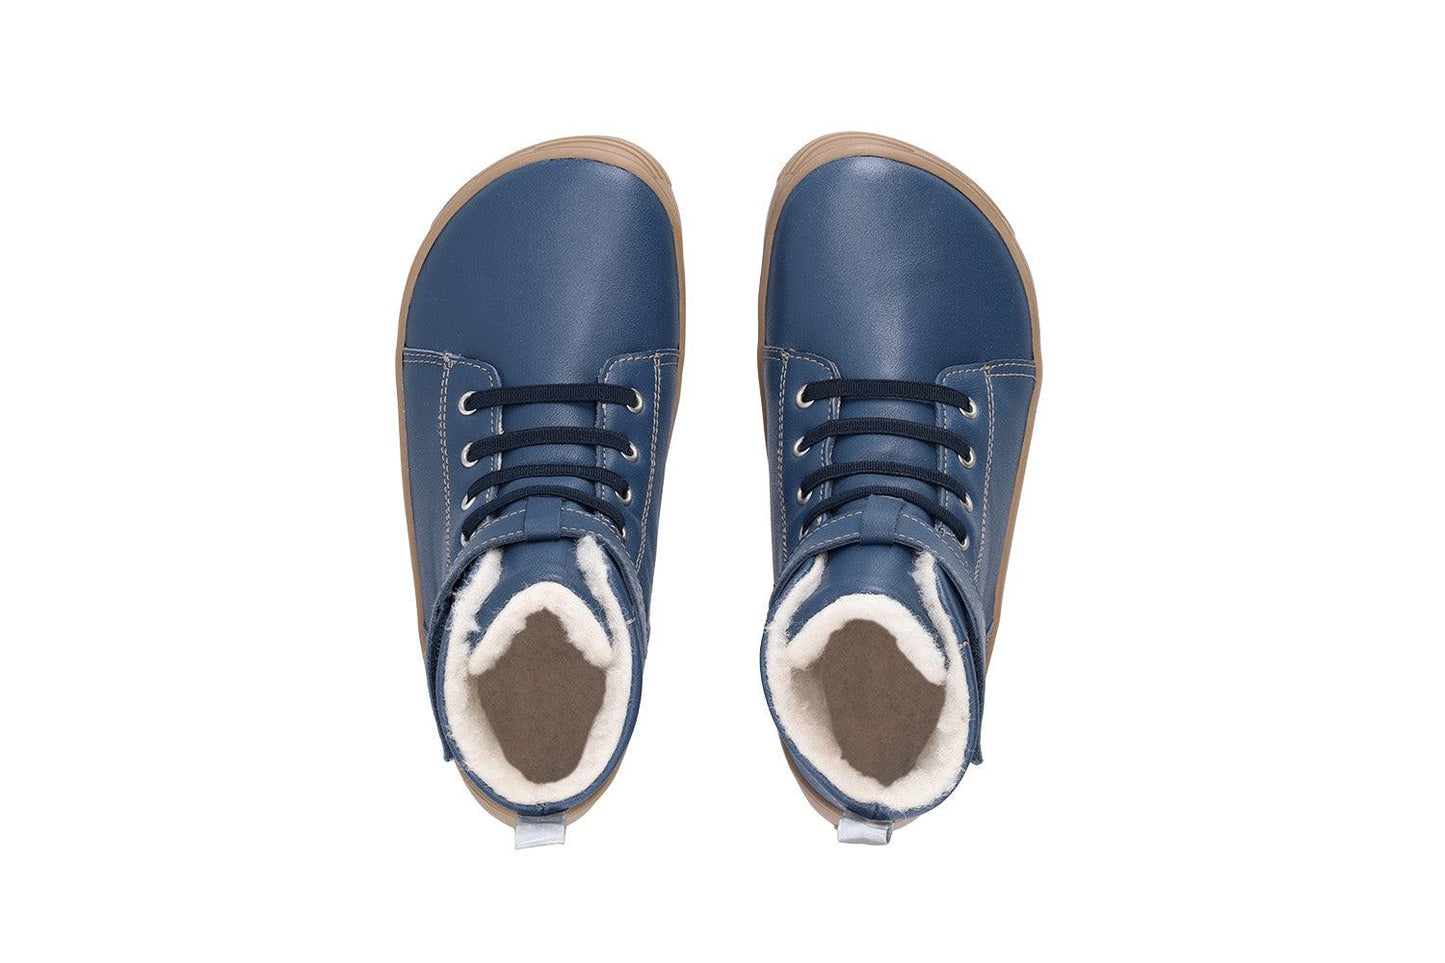 Zapatos de invierno para niño barefoot Be Lenka Winter Kids - Ocean Blue